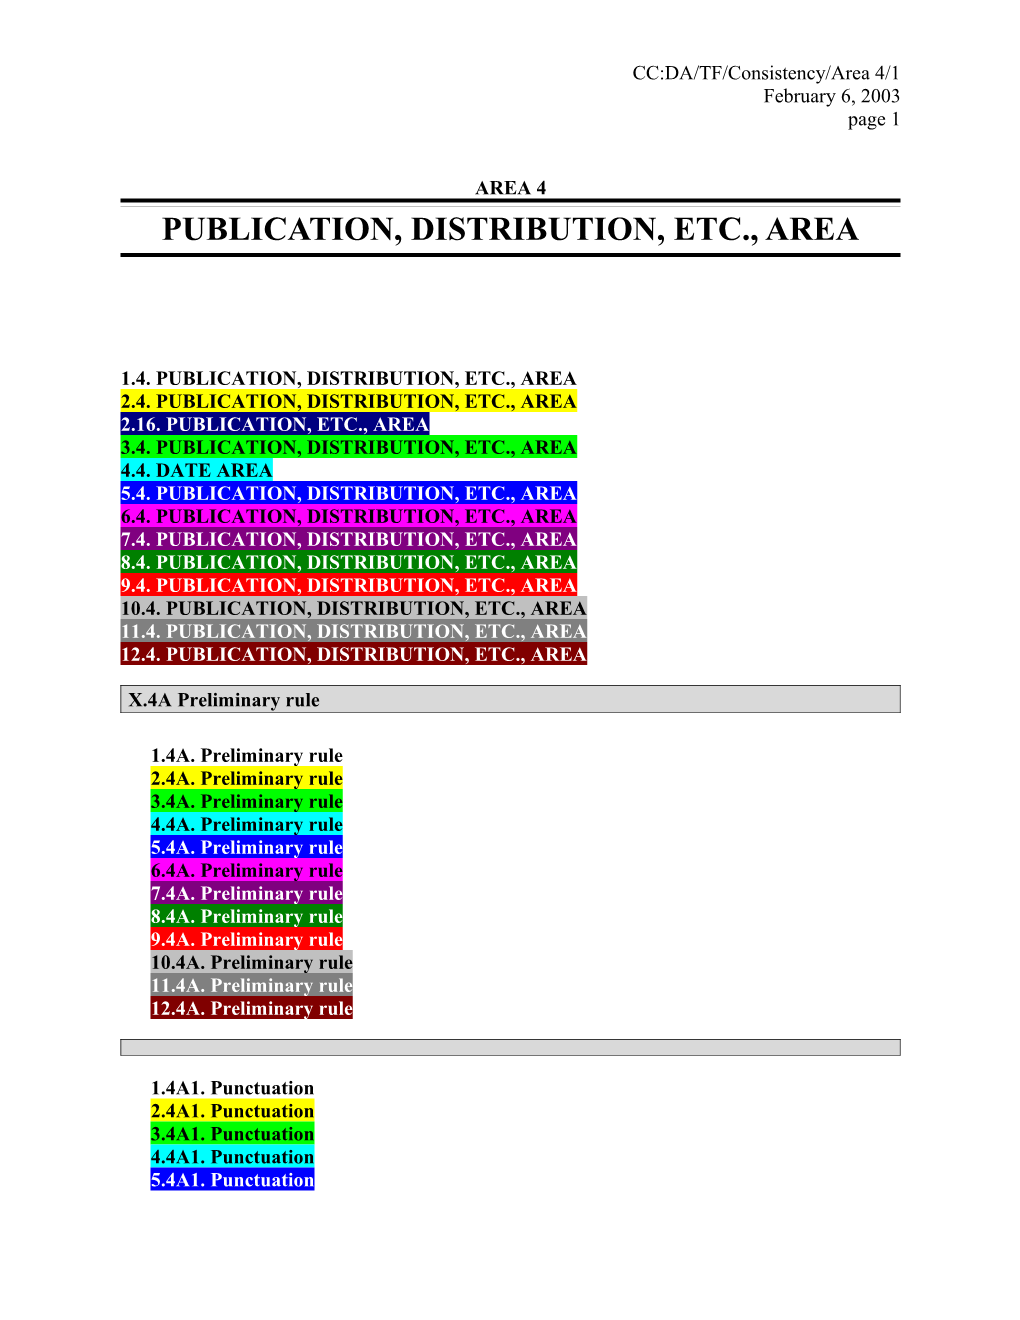 Publication, Distribution, Etc., Area